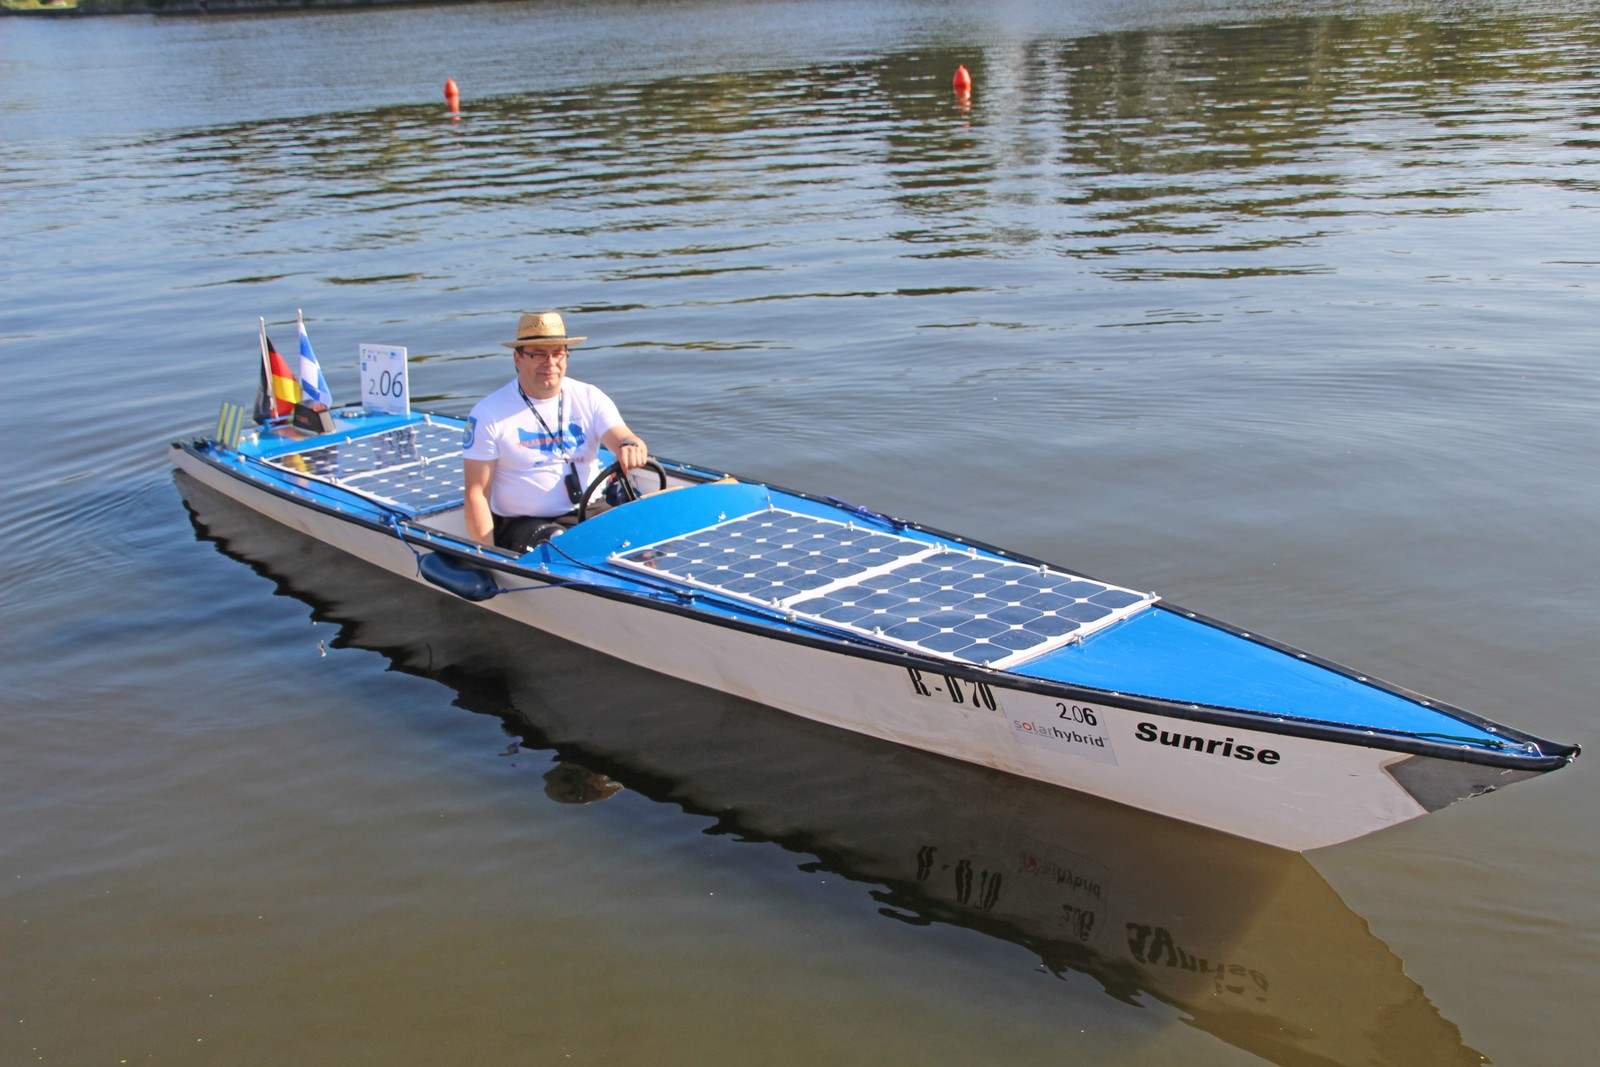 Das Boot ‚Sunrise‘ vom Solarboot-Team Kehlheim, wiegt 400 kg und besitzt einen 4-kW-Motor. Es kommt auf eine Spitzengeschwindigkeit von 26 km/ h. Die Konstruktion von Dr. Segger hat viele 1. Plätze auf diversen Solarboot-Regatten gewonnen.